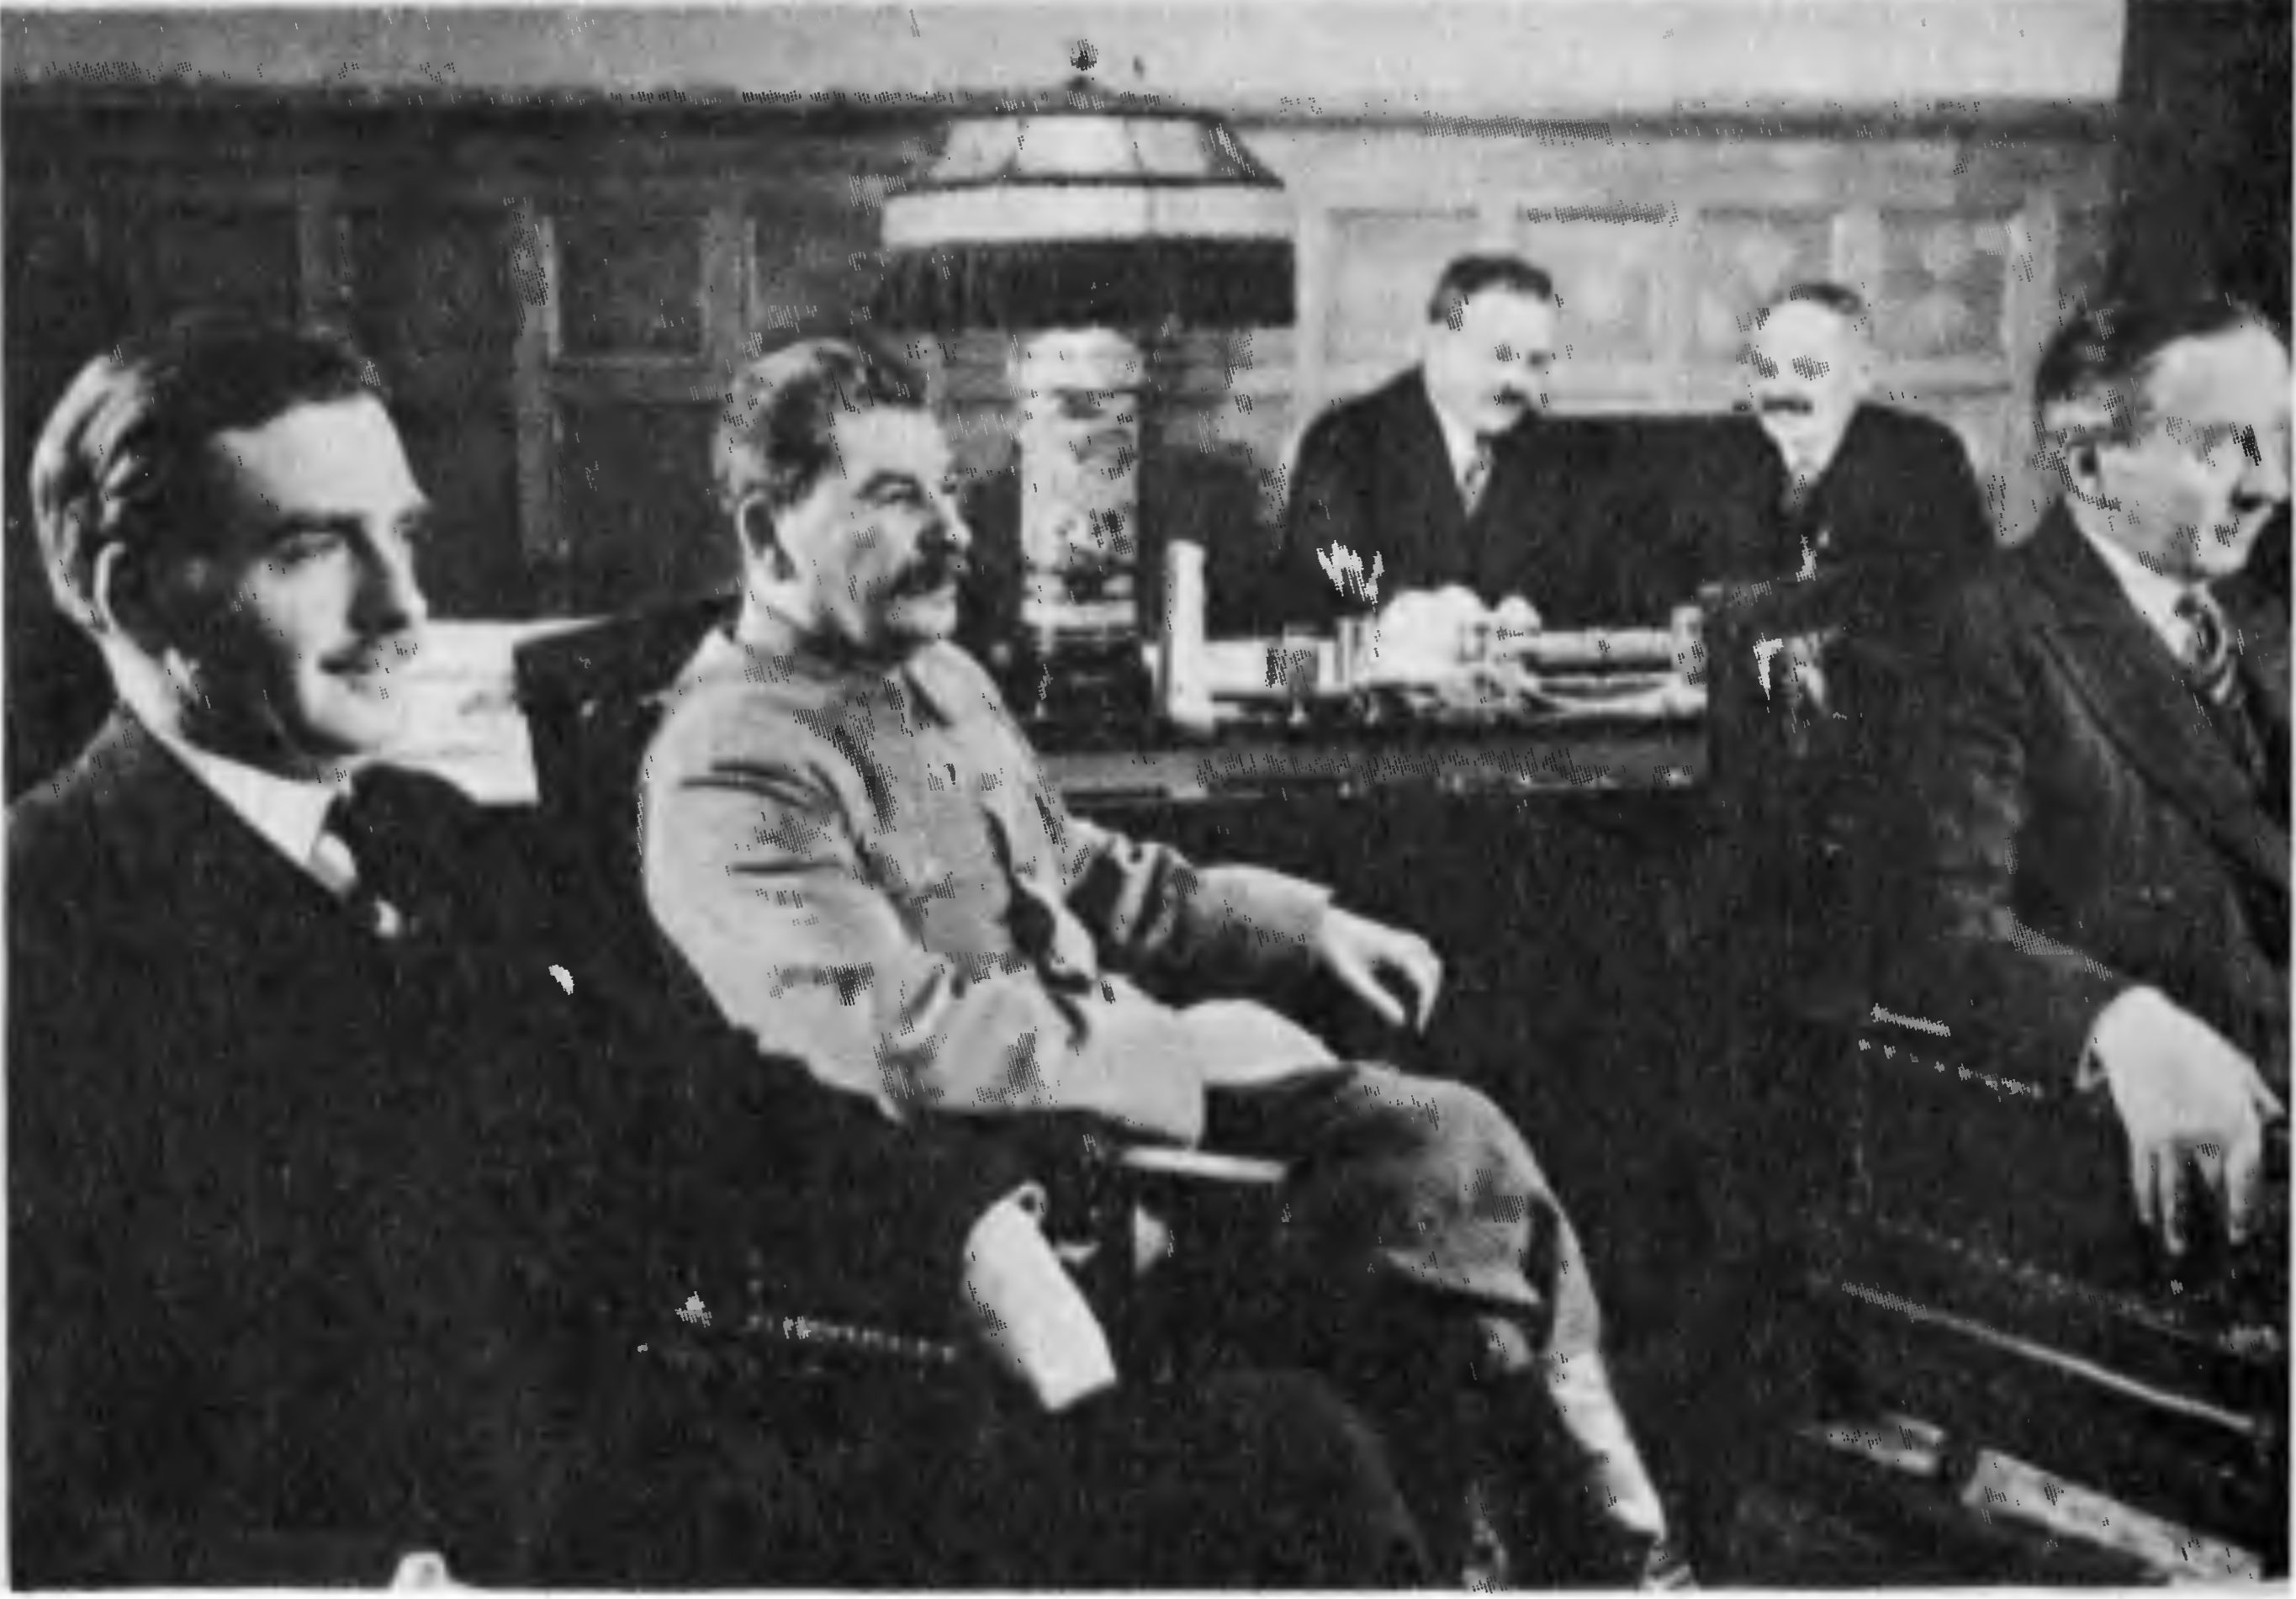 А. Иден на приеме у И.В. Сталина (справа налево: посол Великобритании в СССР лорд Чилстон, И.М. Майский, В.М. Молотов). Москва, 1935 г.